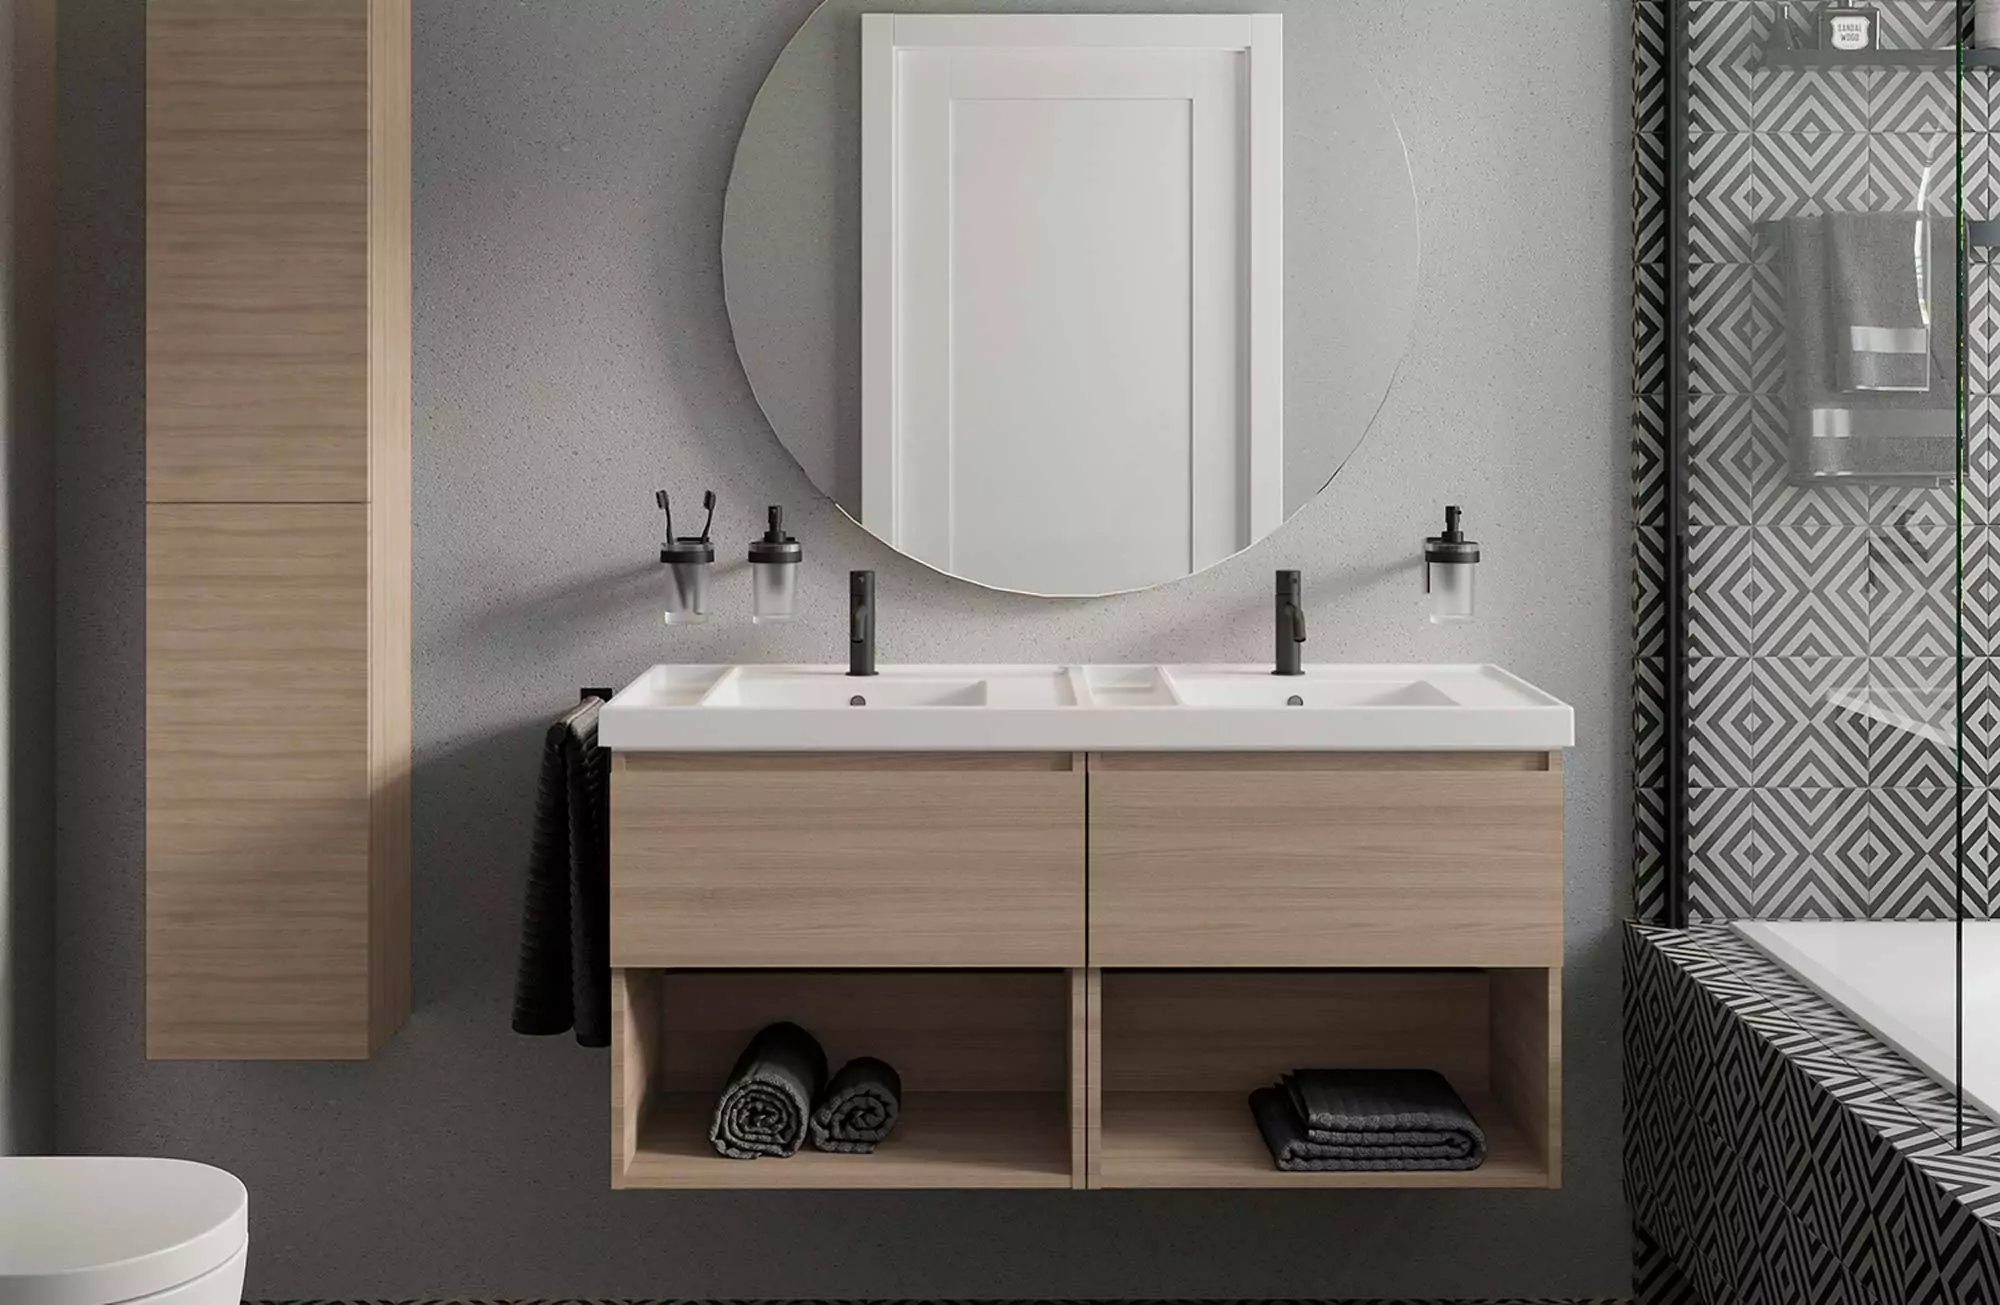 Muebles-Muebles de baño-Mueble de baño pekin teca natural ..